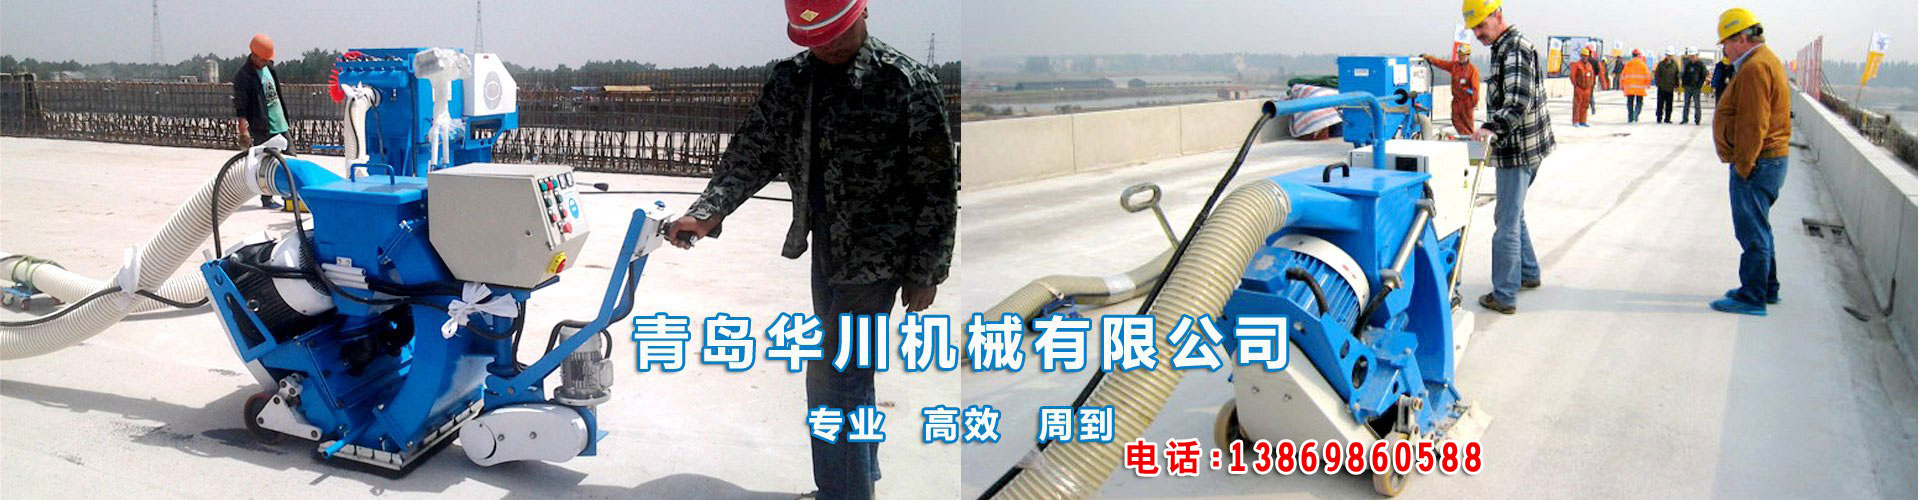 ob体育（中国）科技有限公司生产的路面抛丸机应用于各行业